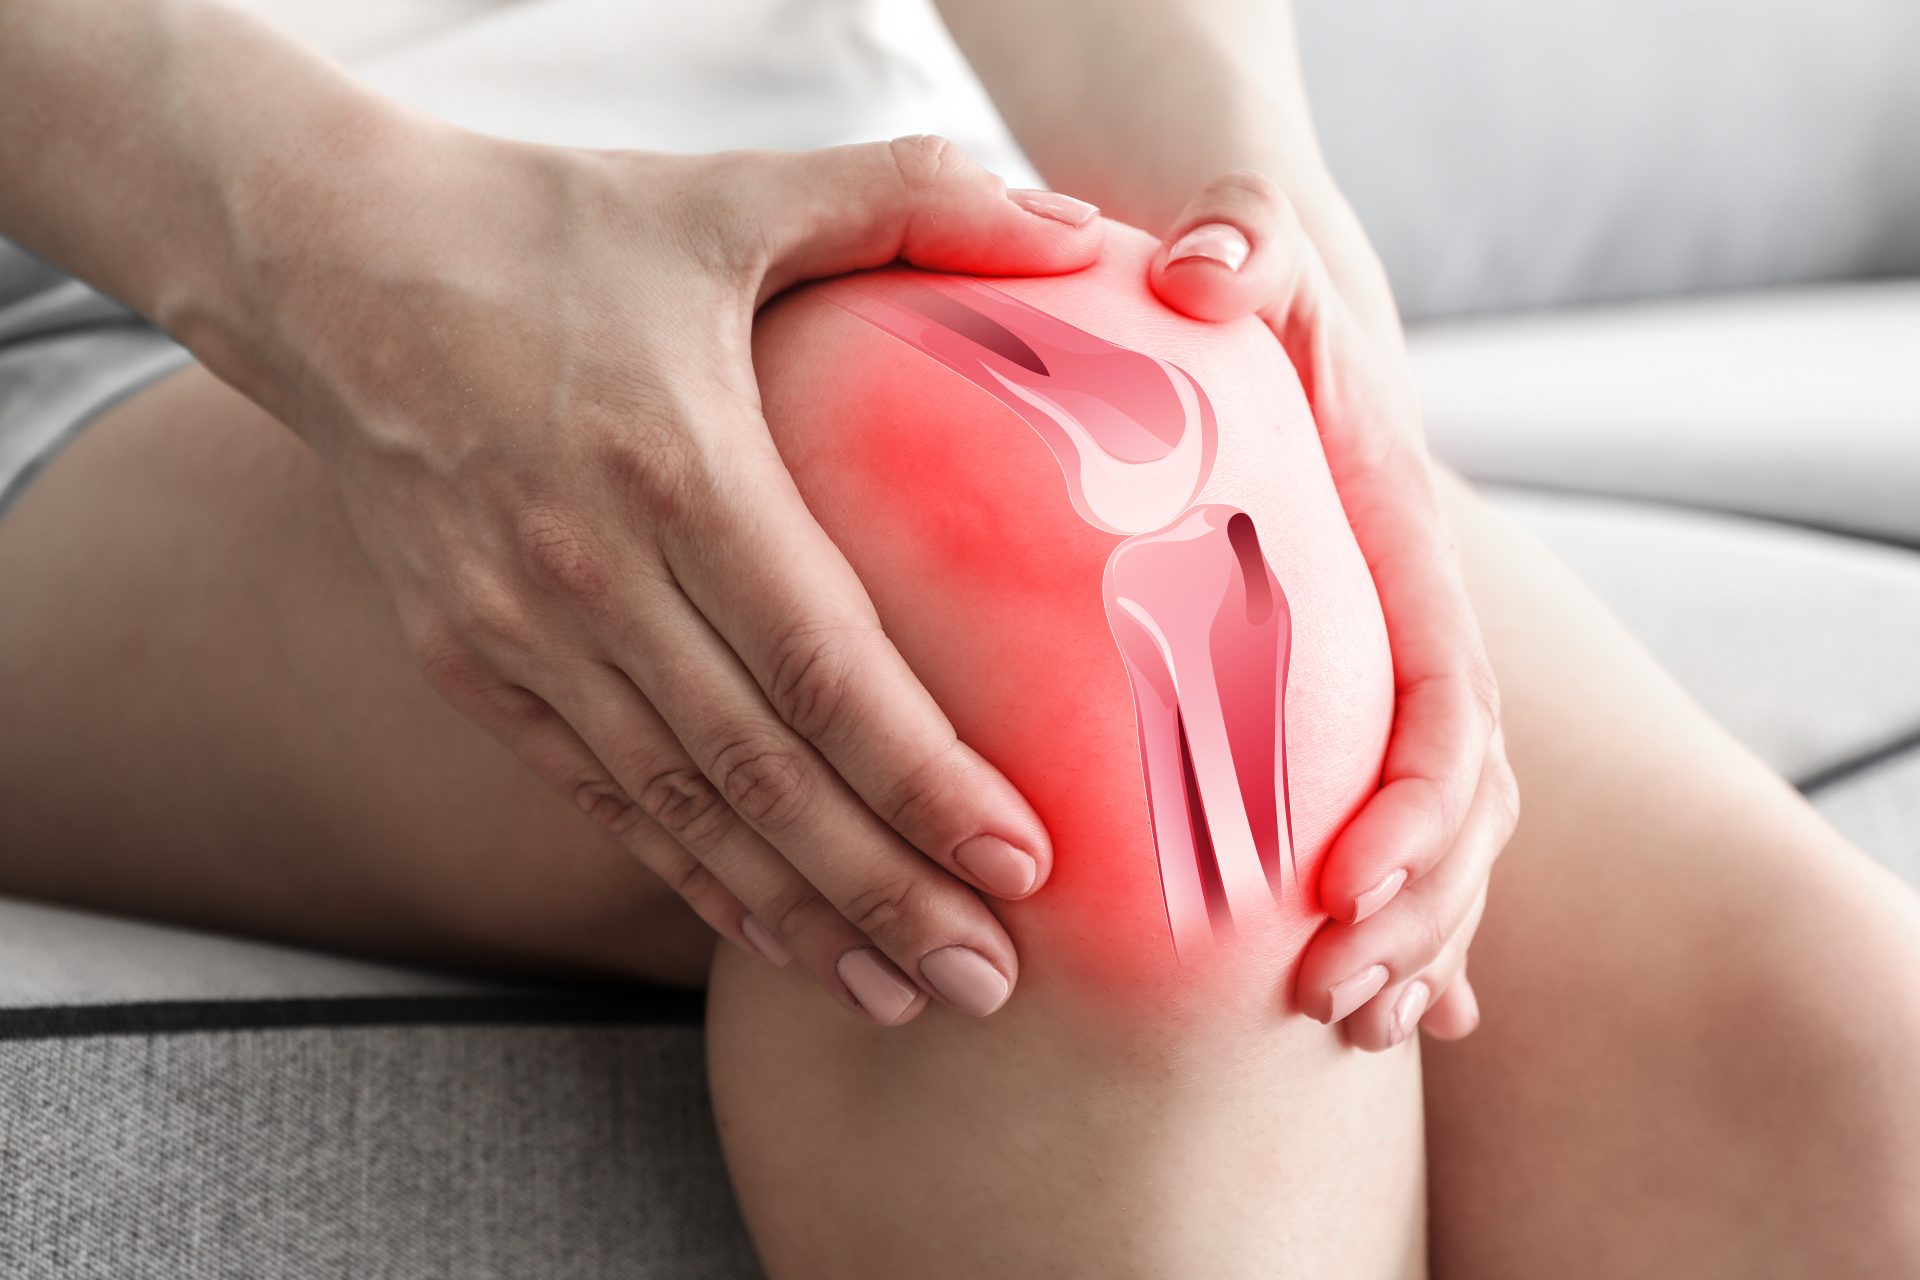 Knee Pain: आपके घुटनों में भी है तेज दर्द, तो आज ही डाइट में शामिल करें ये 5 फूड, मिलेगी राहत